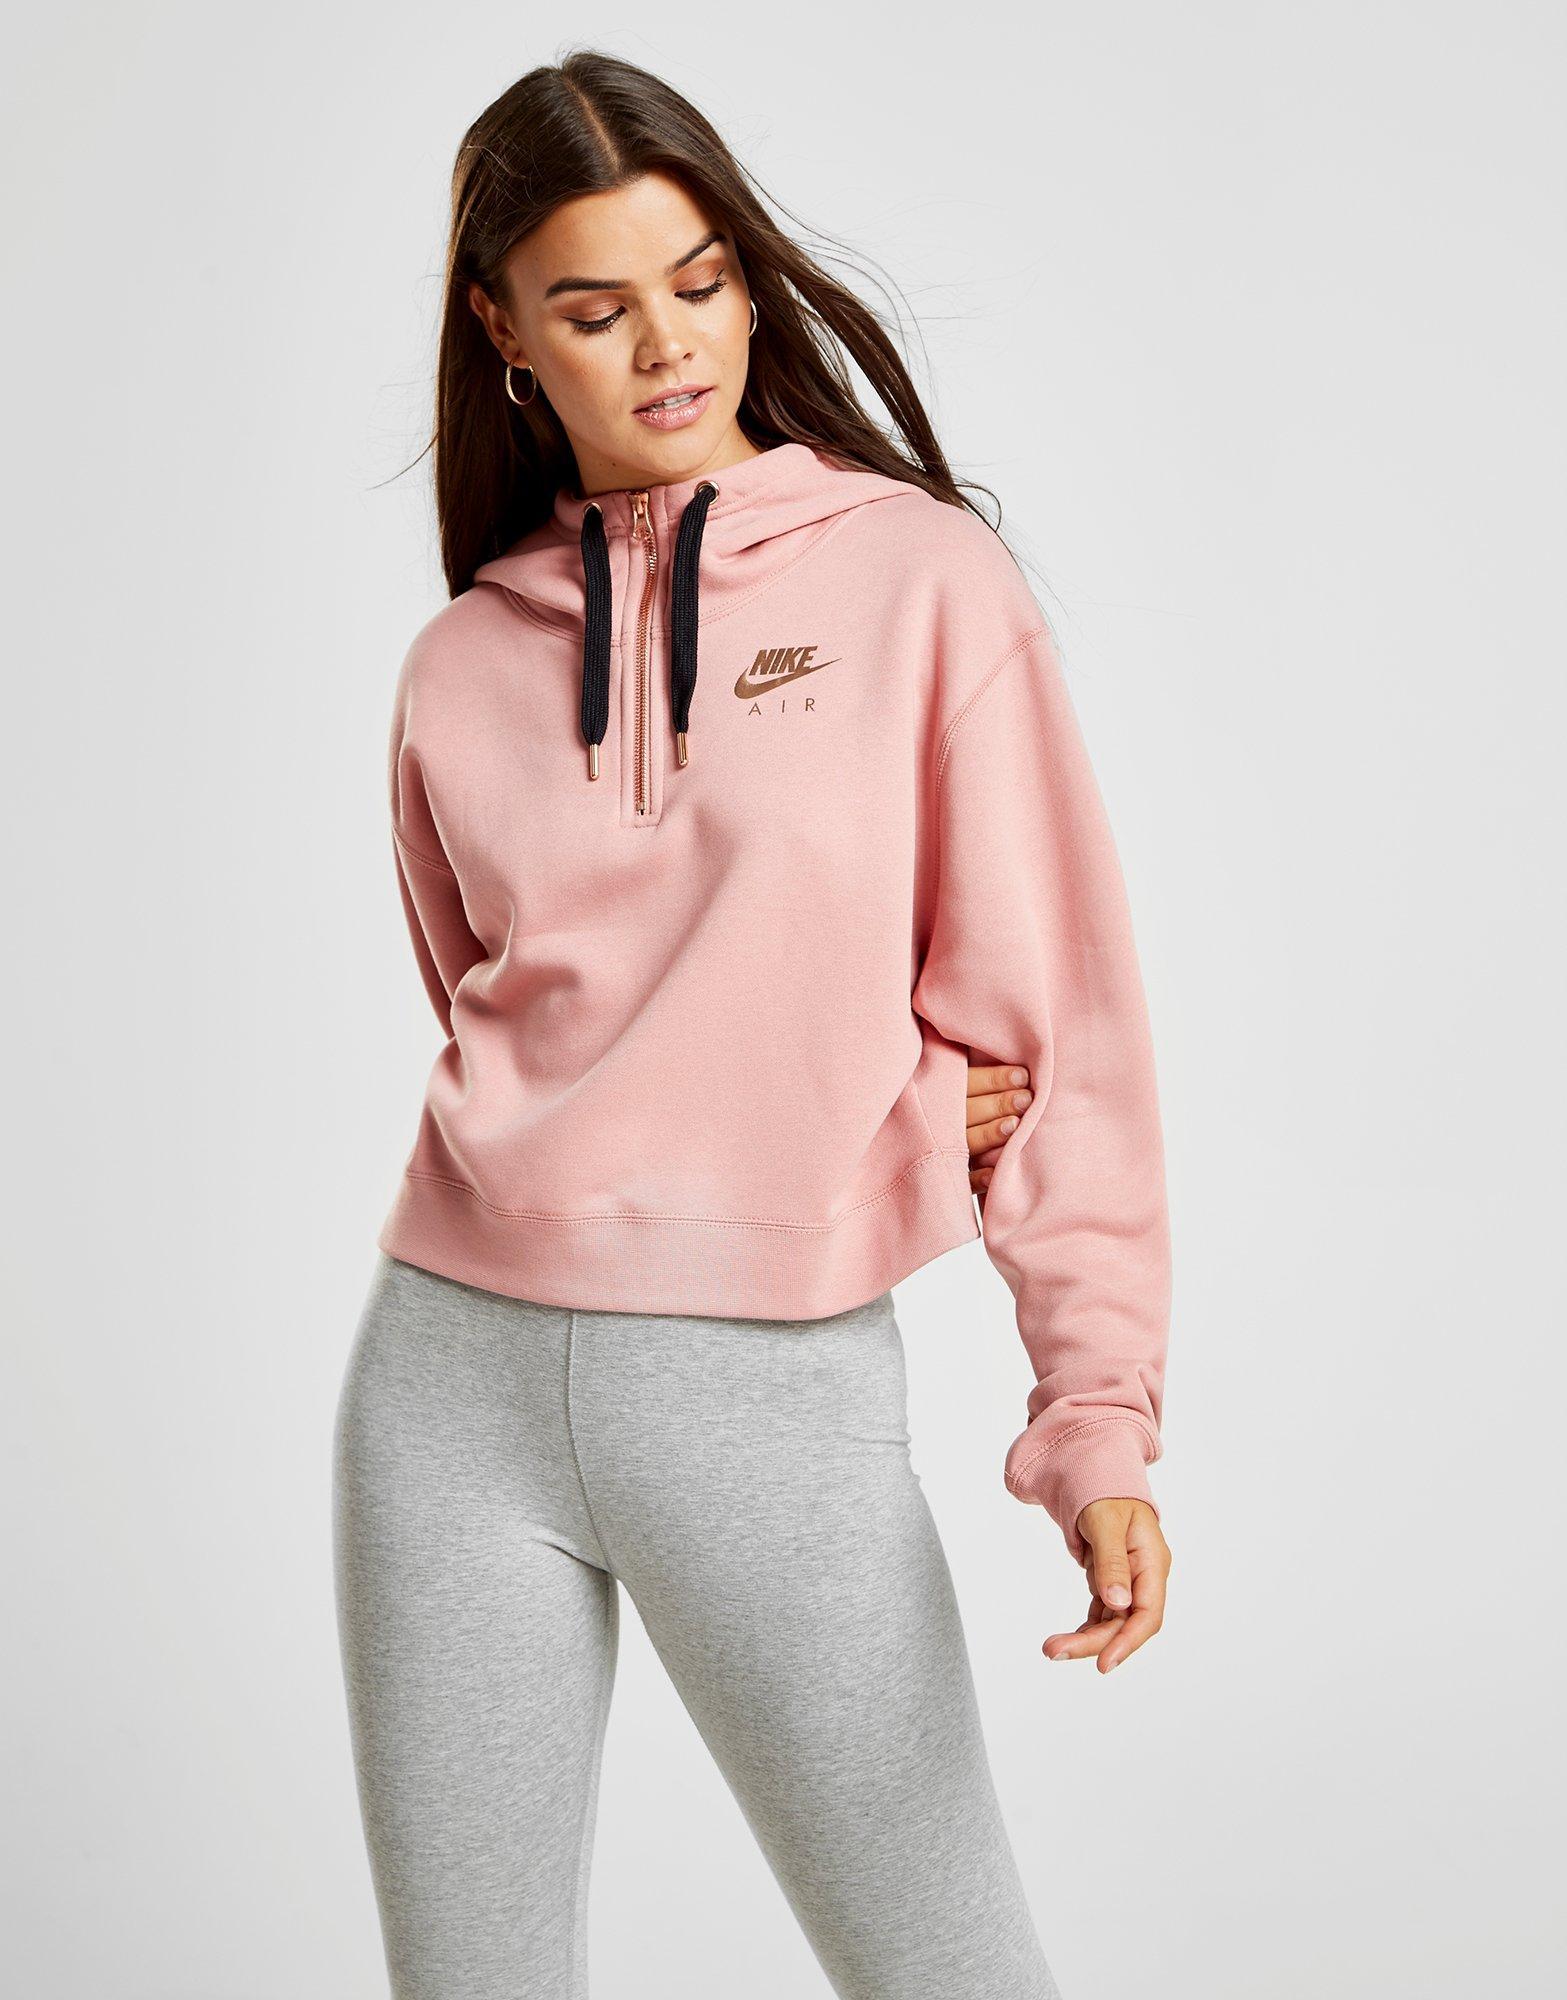 nike air womens half zip hoodie pink